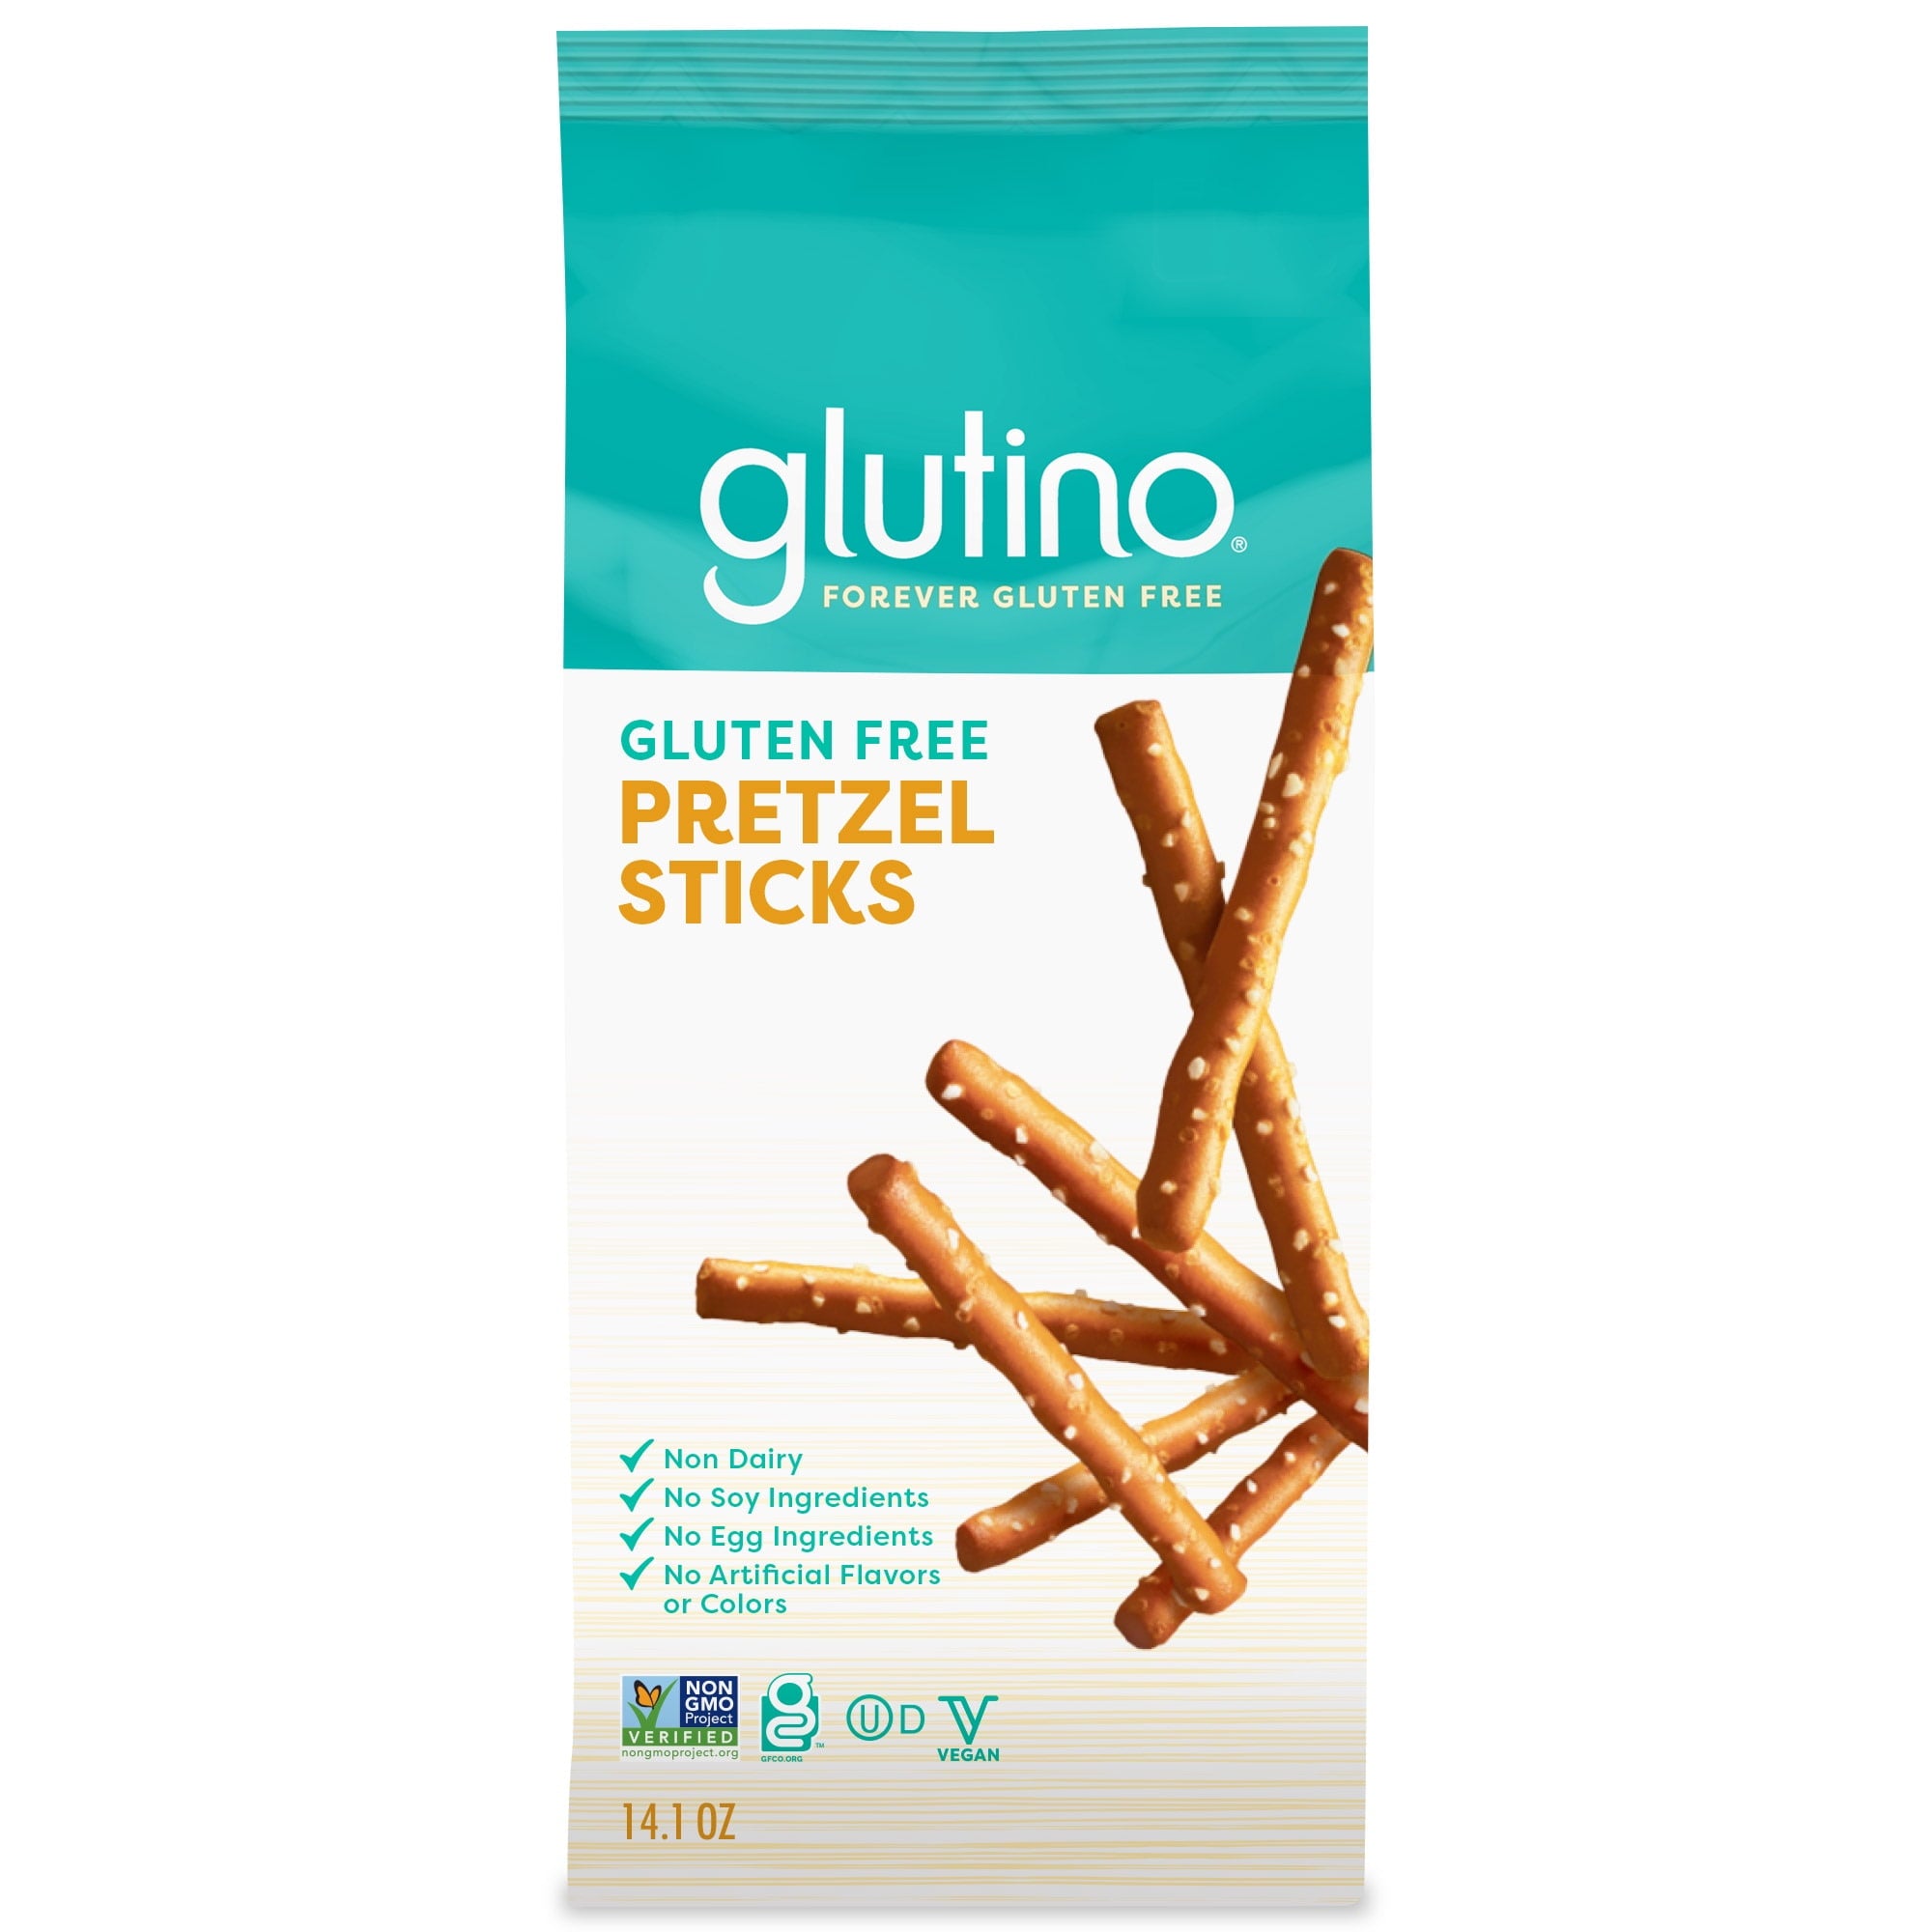 Glutino Gluten Free Pretzel Sticks, front of bag